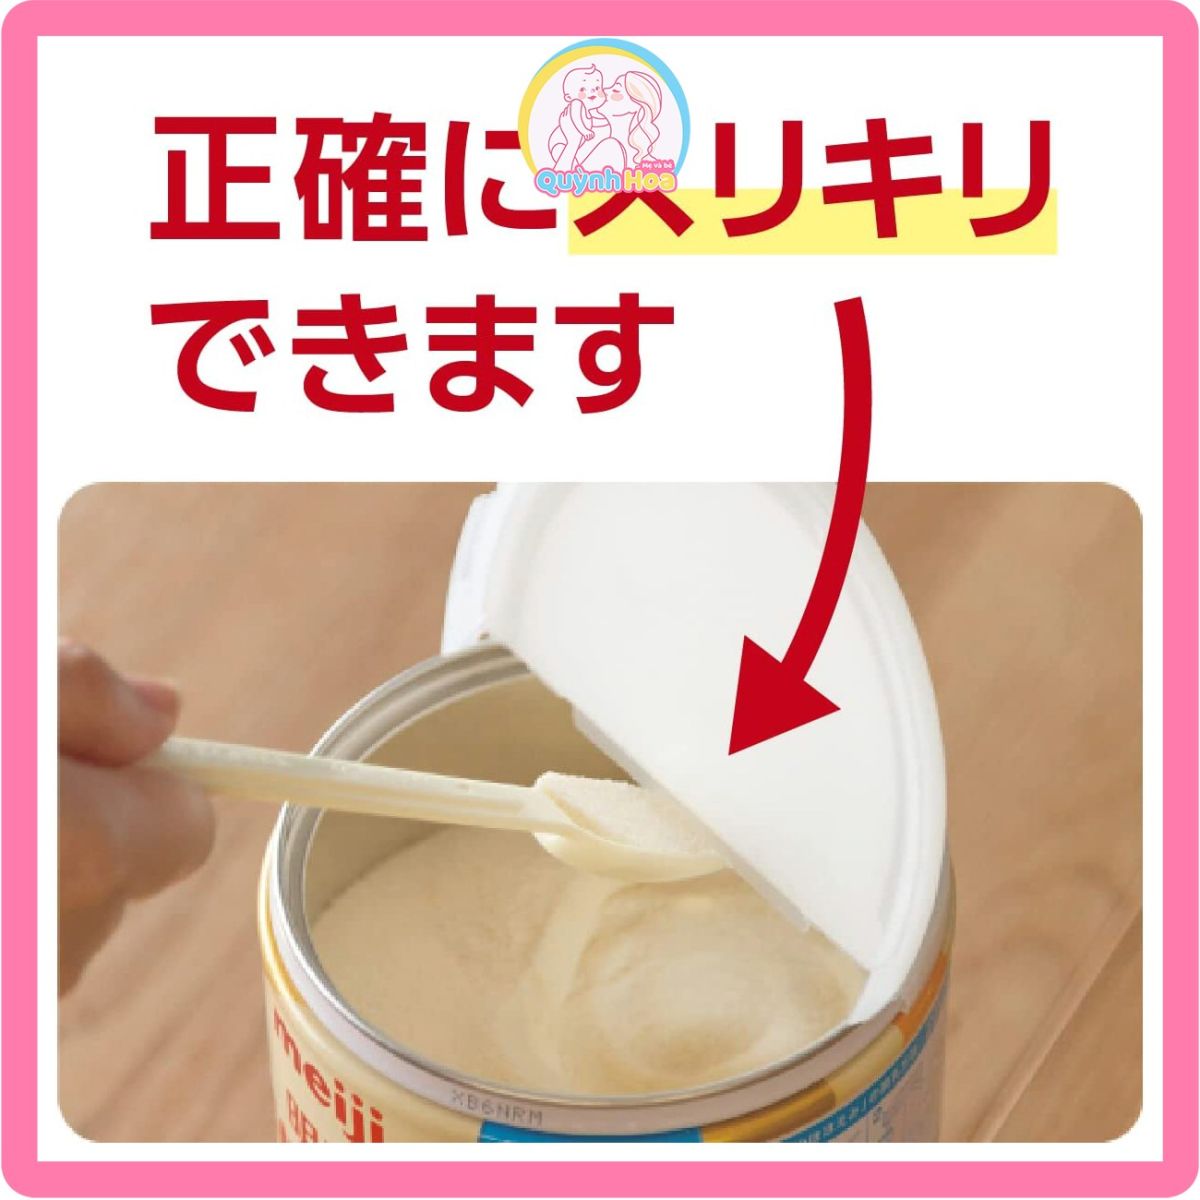 Sữa Meiji Nhật số 0-1, 800g [DATE 05/2025] thumb 1